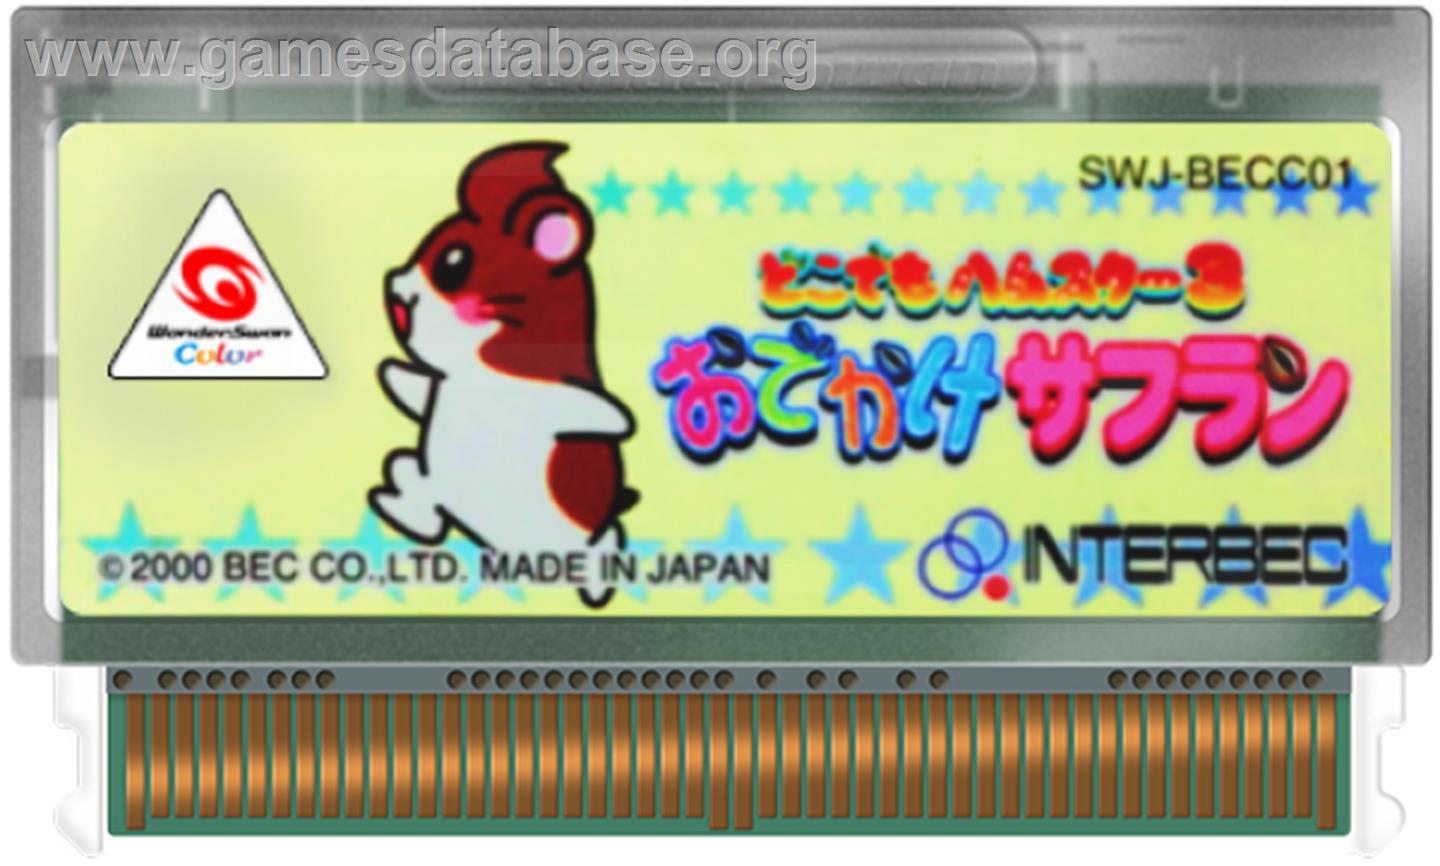 Dokodemo Hamster 3: O-Dekake Safuran - Bandai WonderSwan Color - Artwork - Cartridge